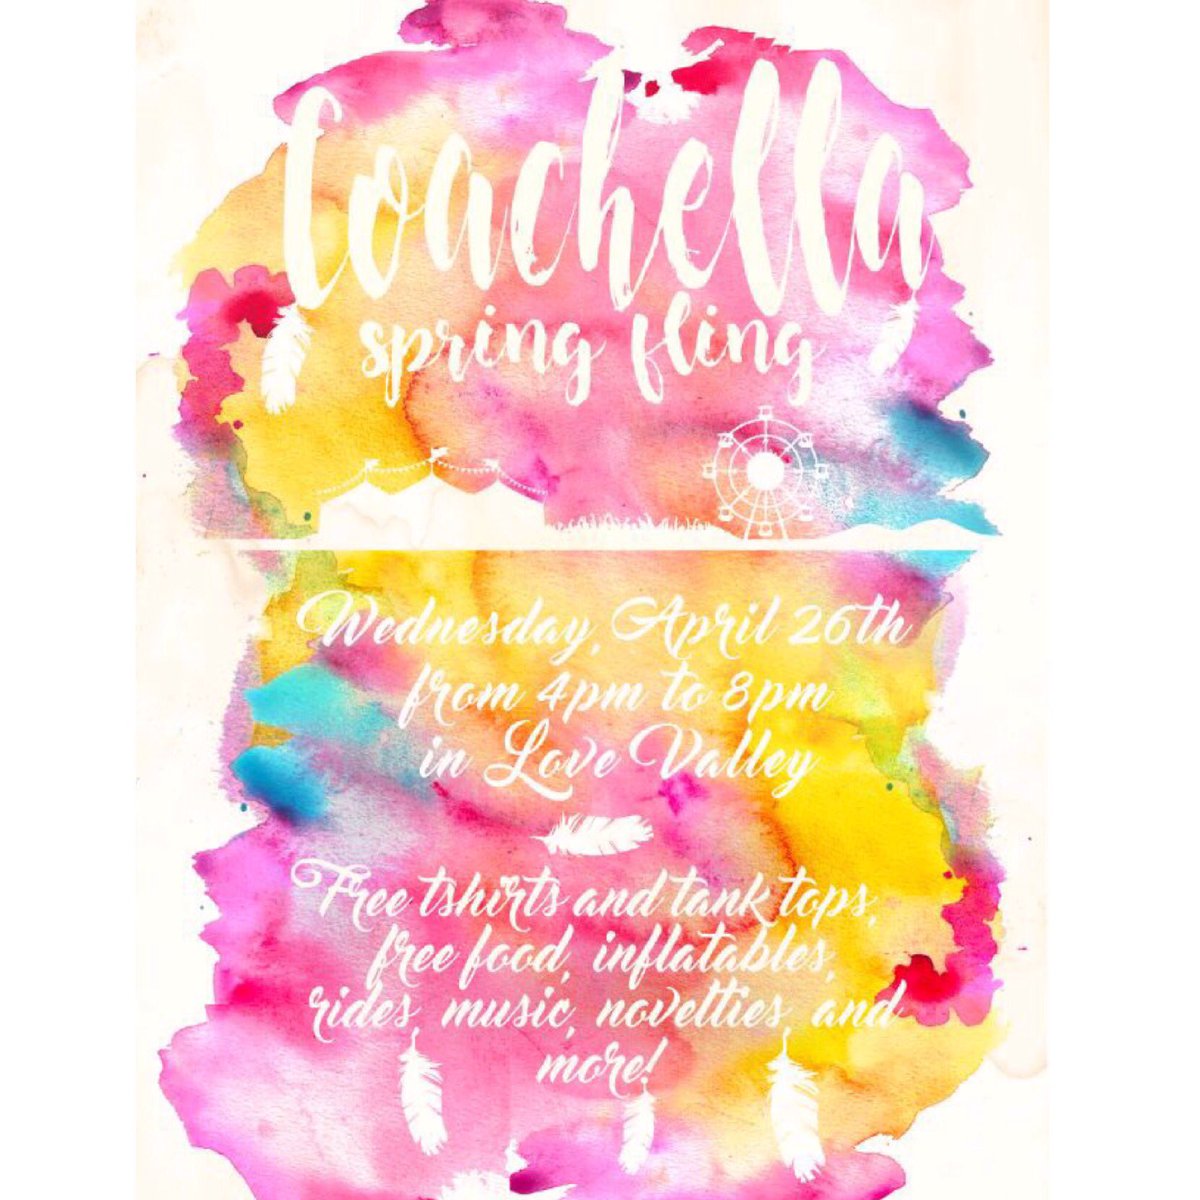 Enjoy the weather with SAC Coachella Spring Fling Wednesday April 25th #uwg_sac #cirquedusac #uwg20 #uwg19 #uwg18 #uwg17 #uwg16